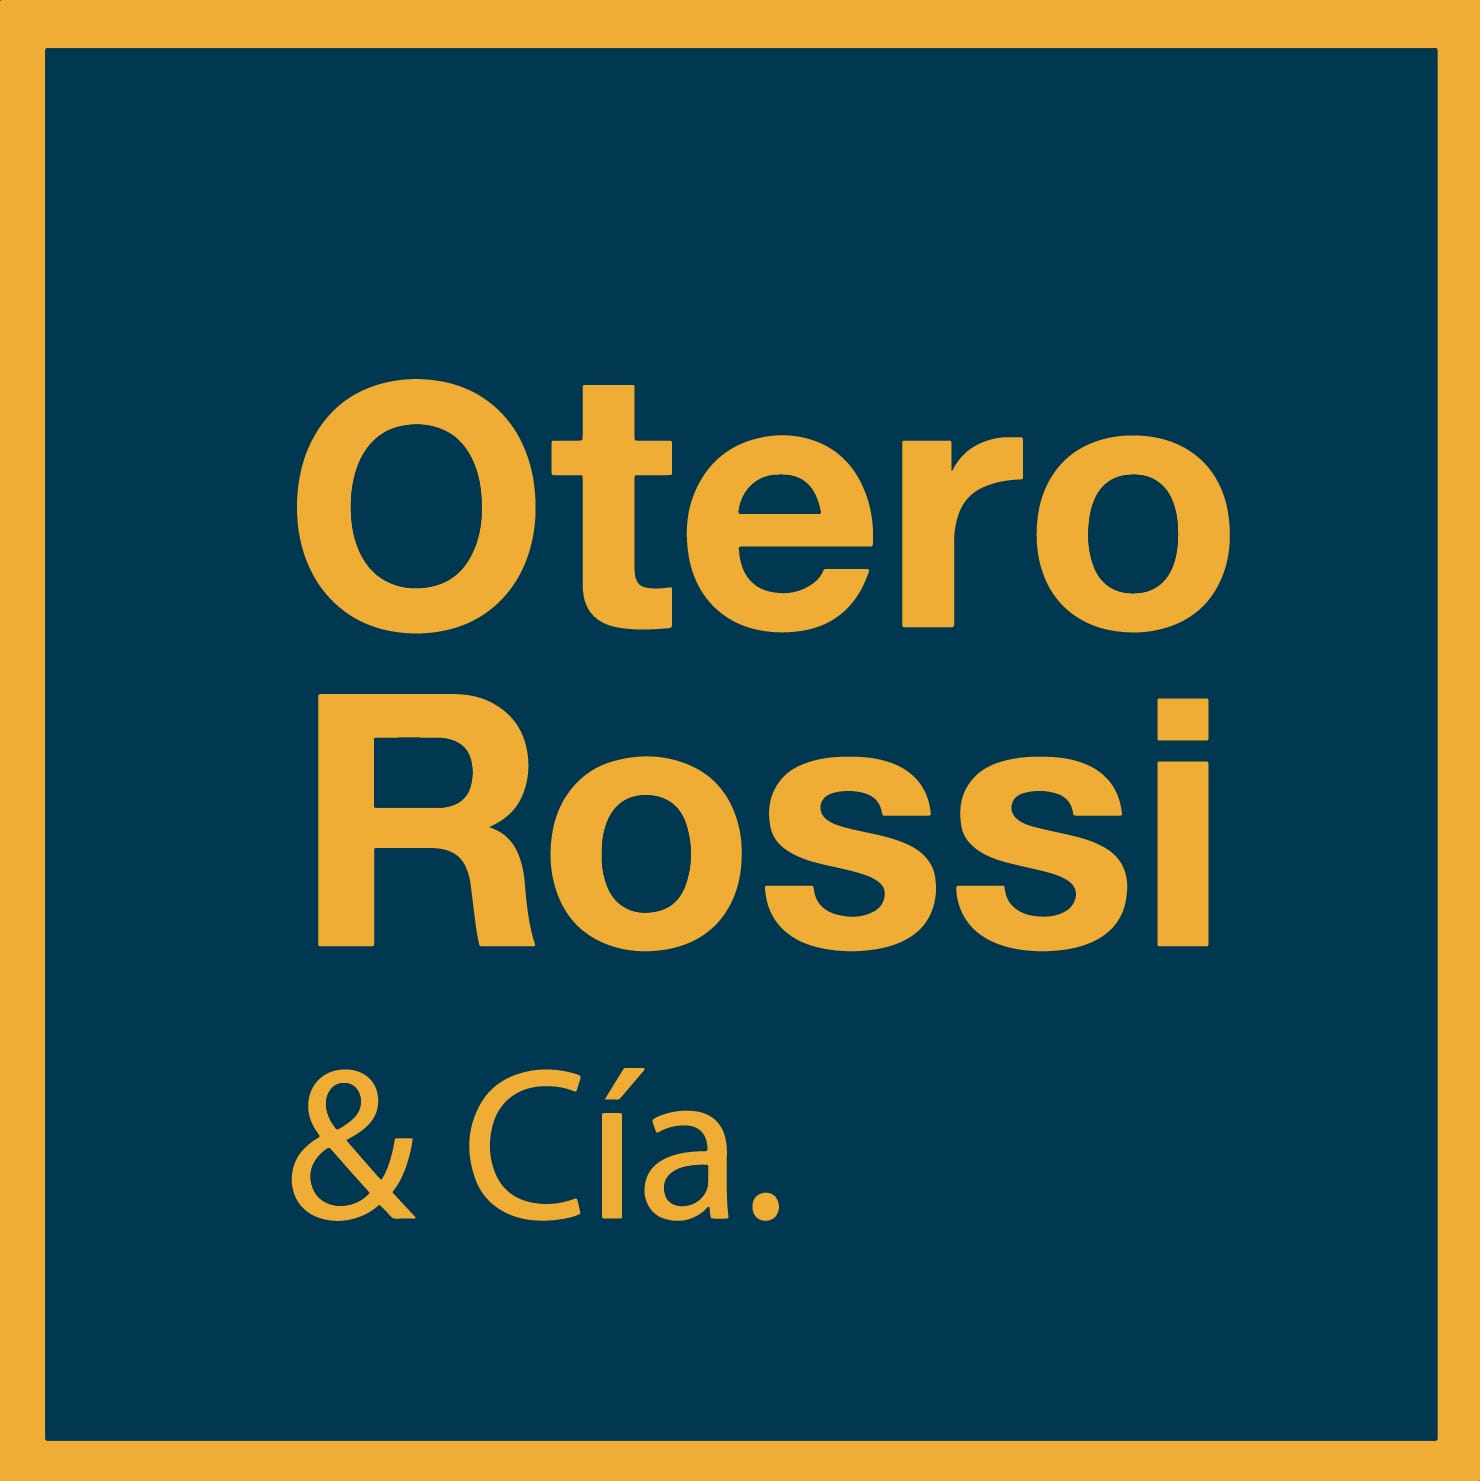 Otero Rossi y Cía.